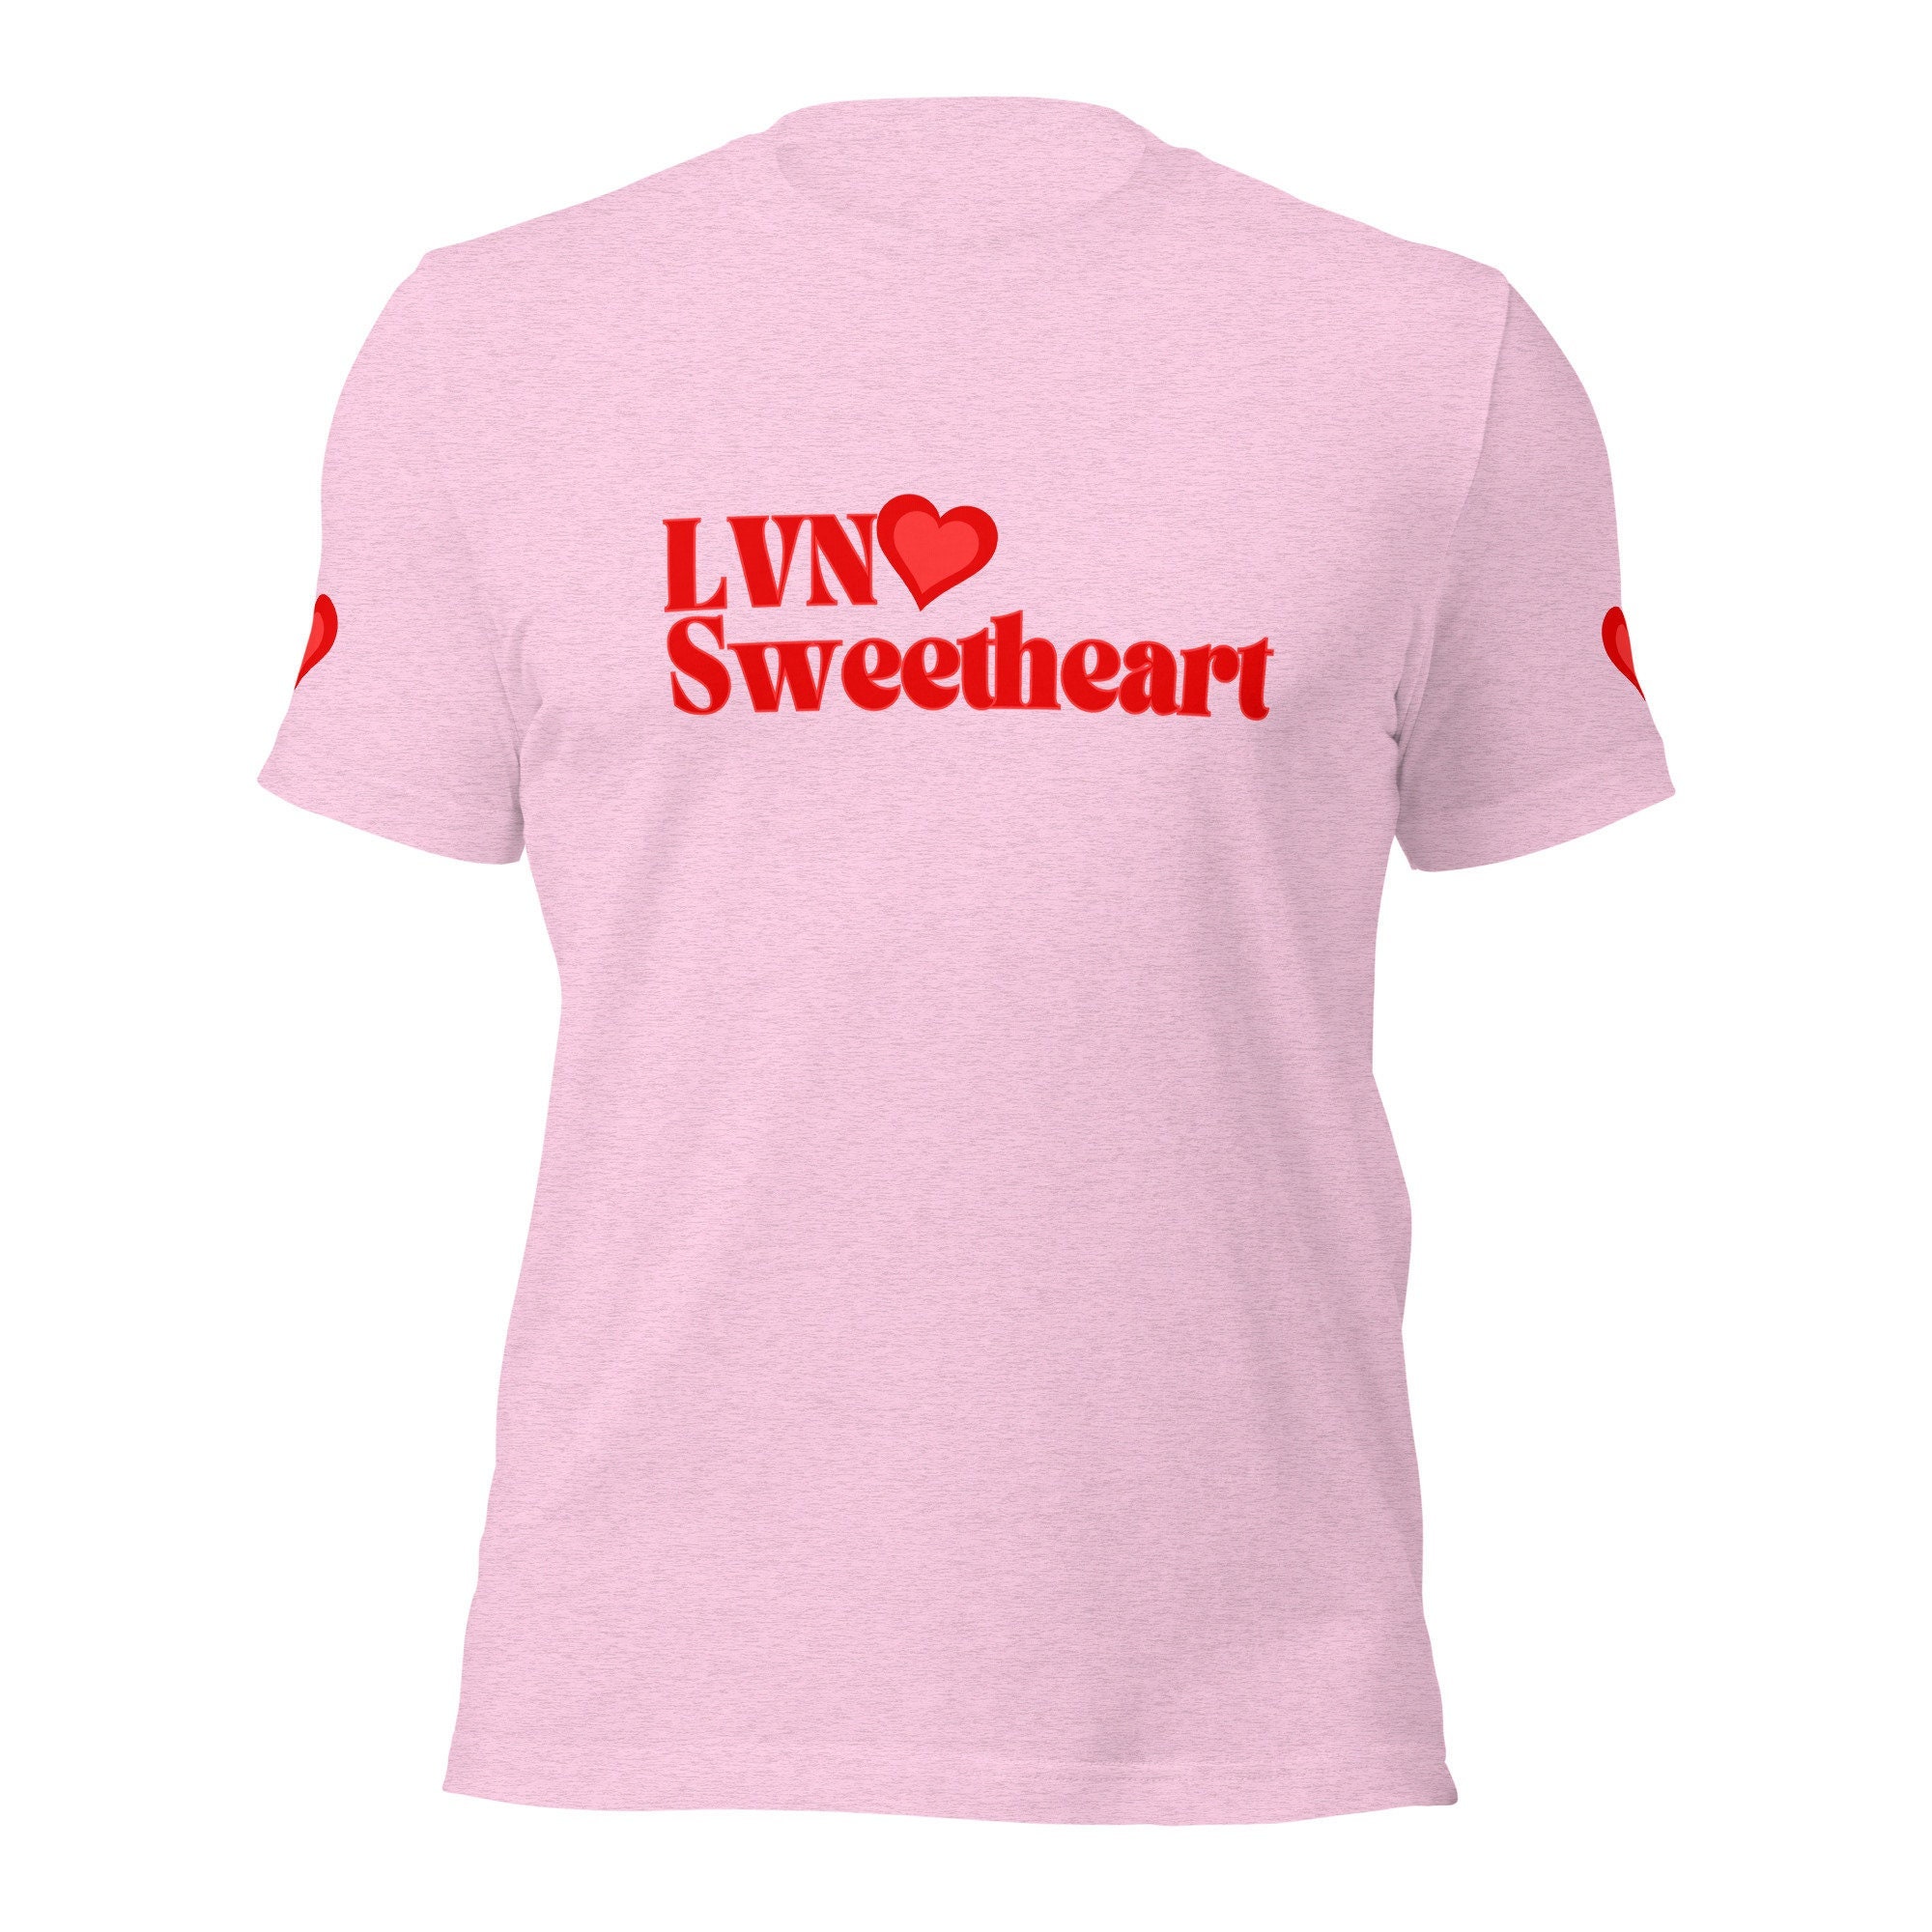 Licensed Vocational Nurse Gifts LVN Nurses Medical Love Essential T-Shirt  for Sale by studioaprio